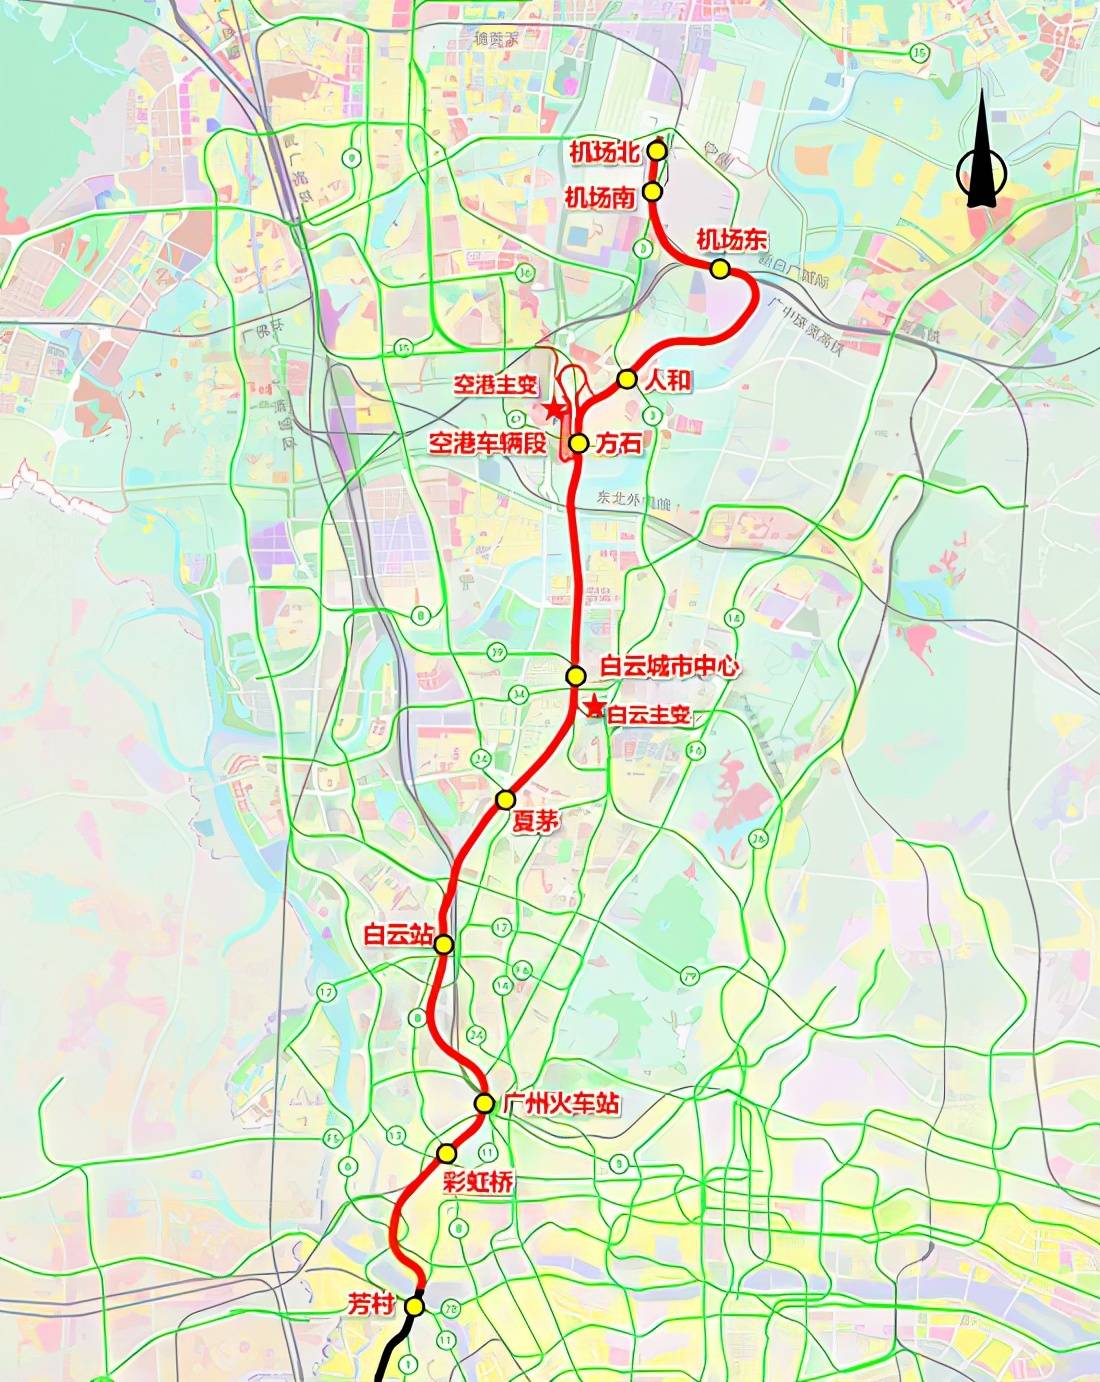 广州地铁18号线北延段,22号线北延段完成环境影响评价第二次公告